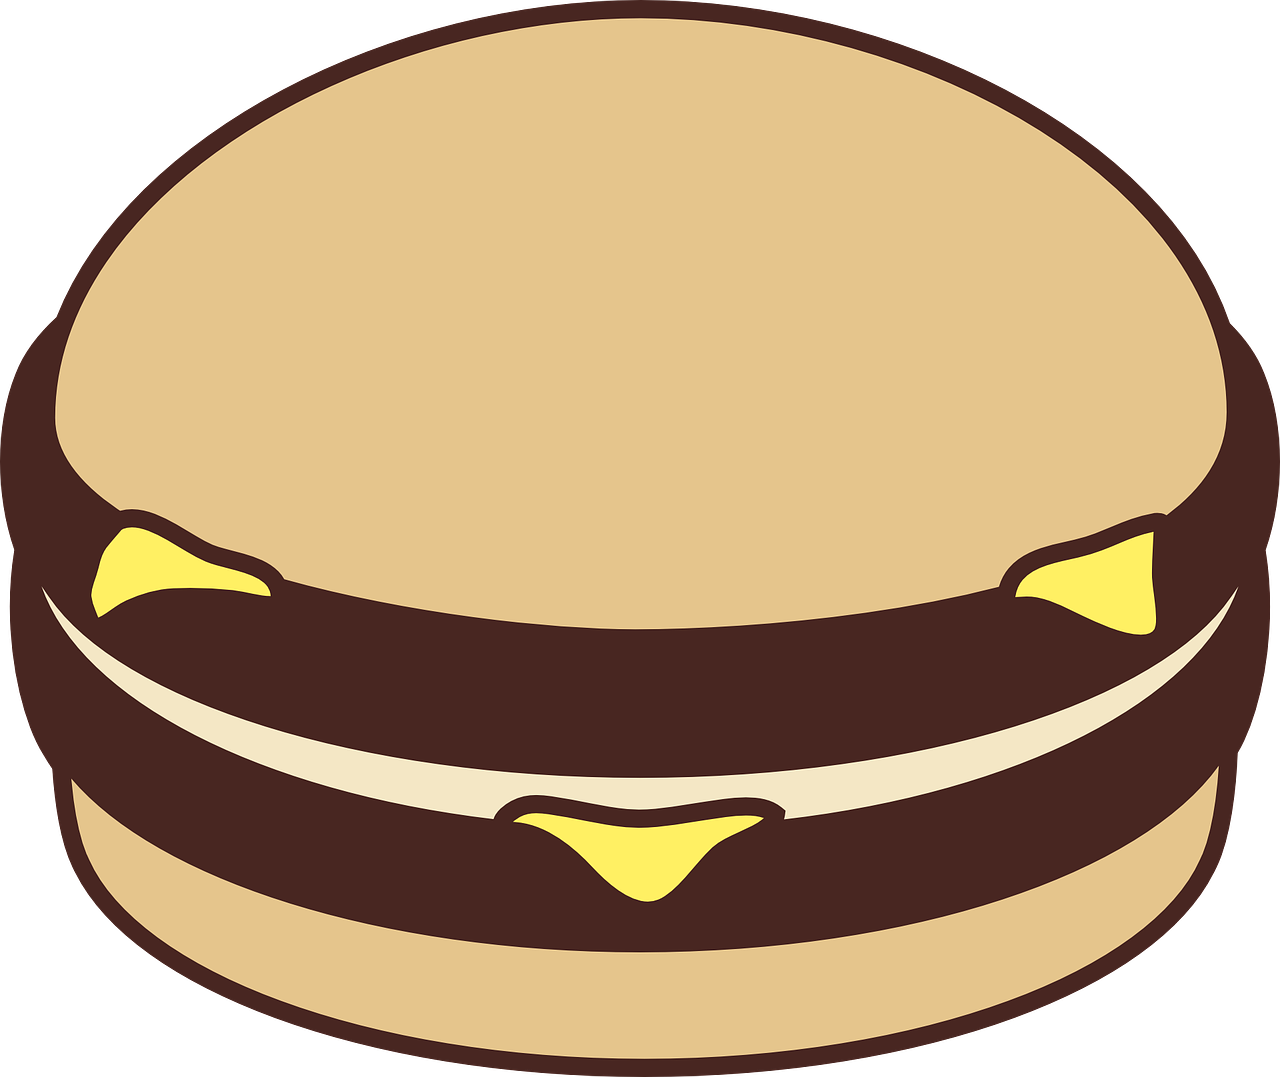 burger cheese mayonnaise free photo